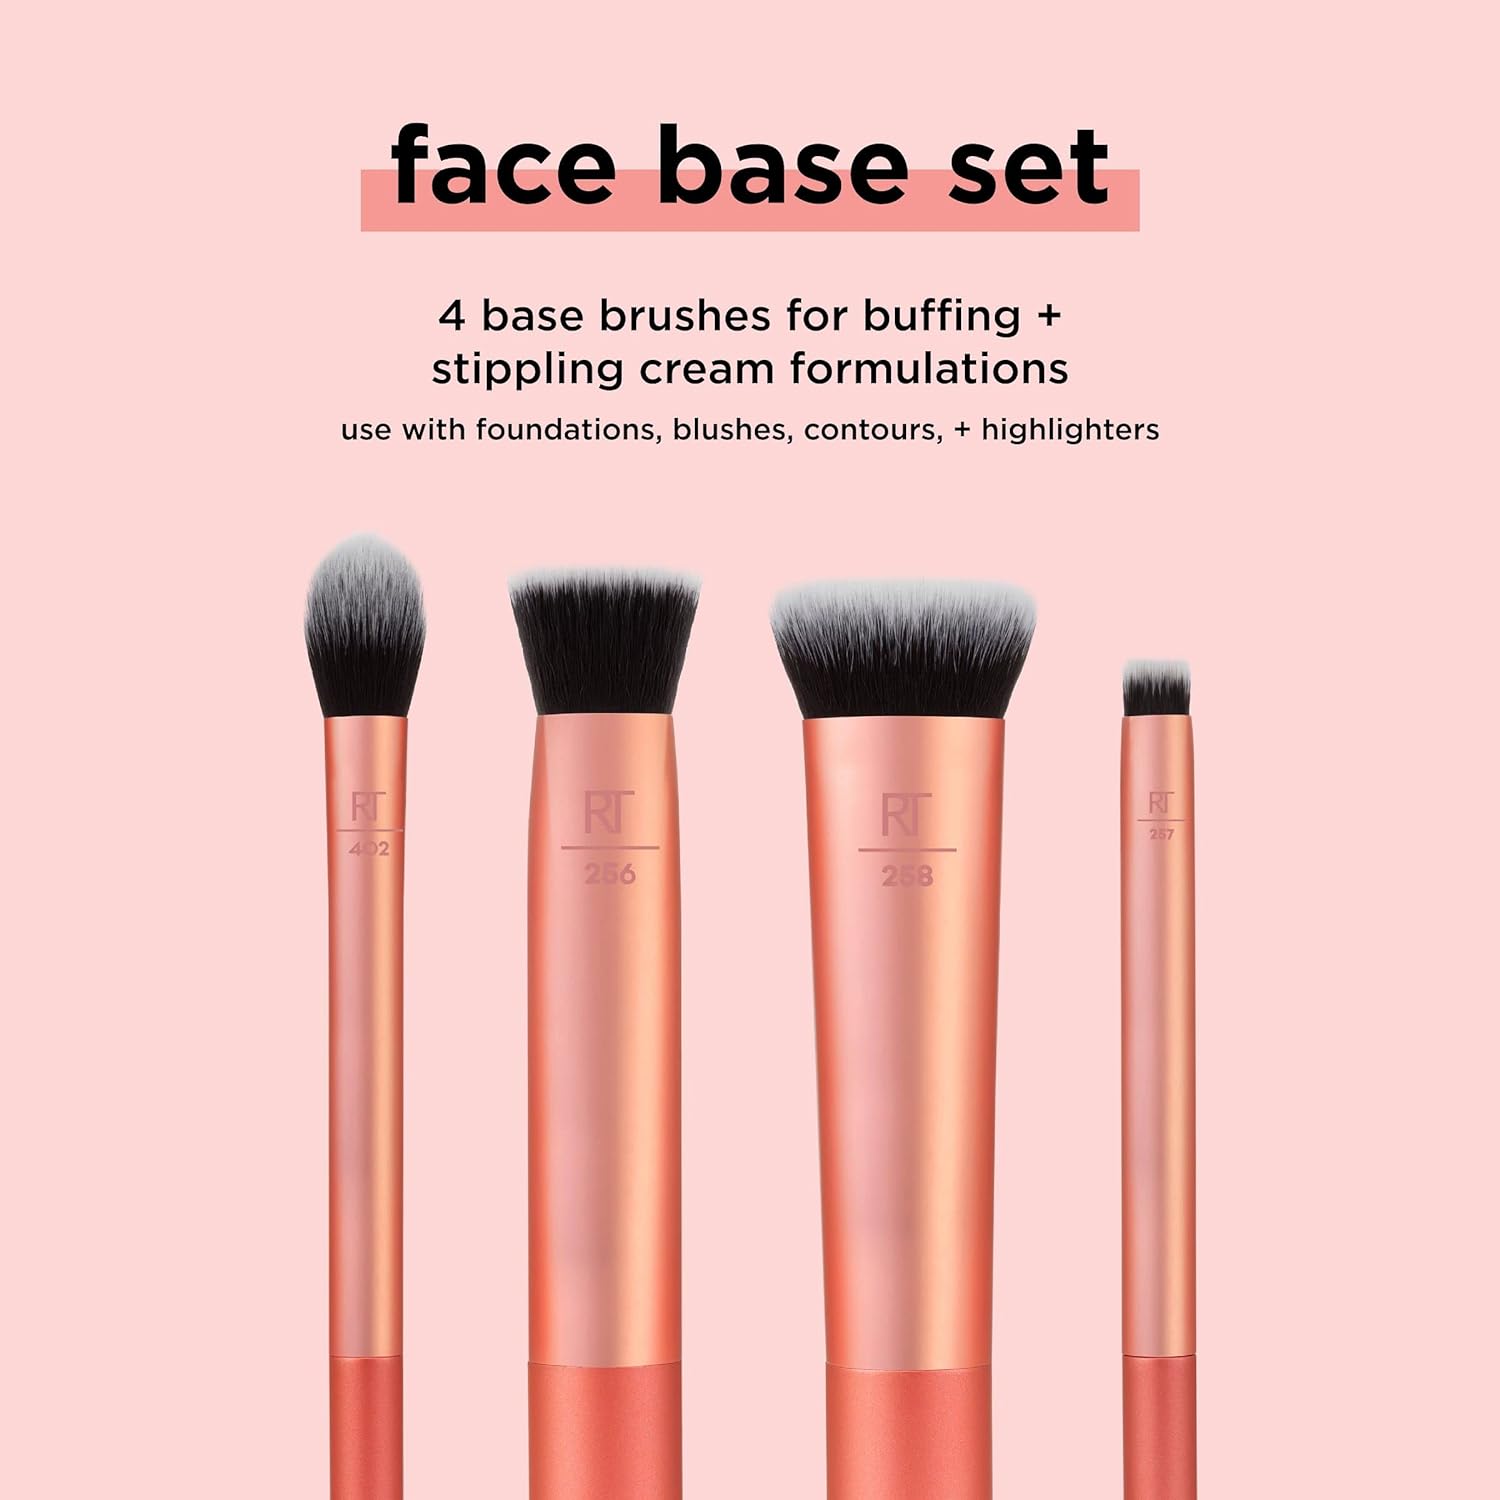 Real Techniques Face Base Makeup Brush Kit, 4 Piece Set